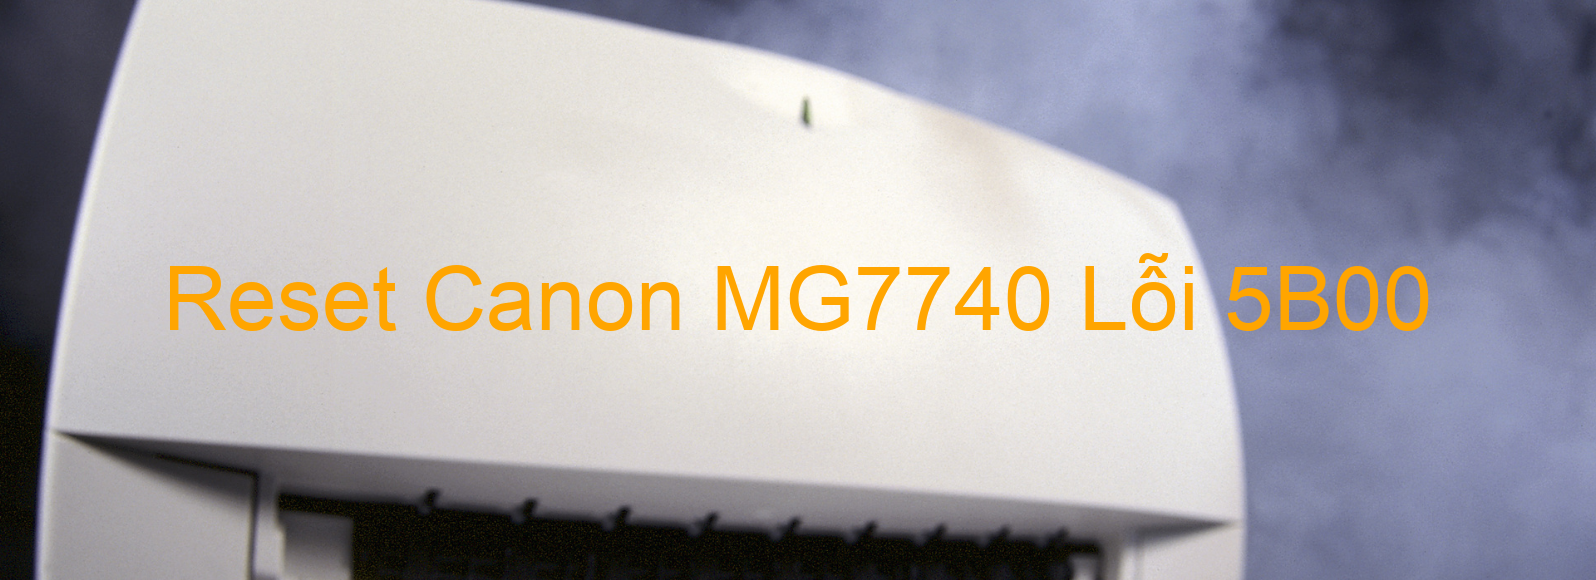 Reset Canon MG7740 Lỗi 5B00